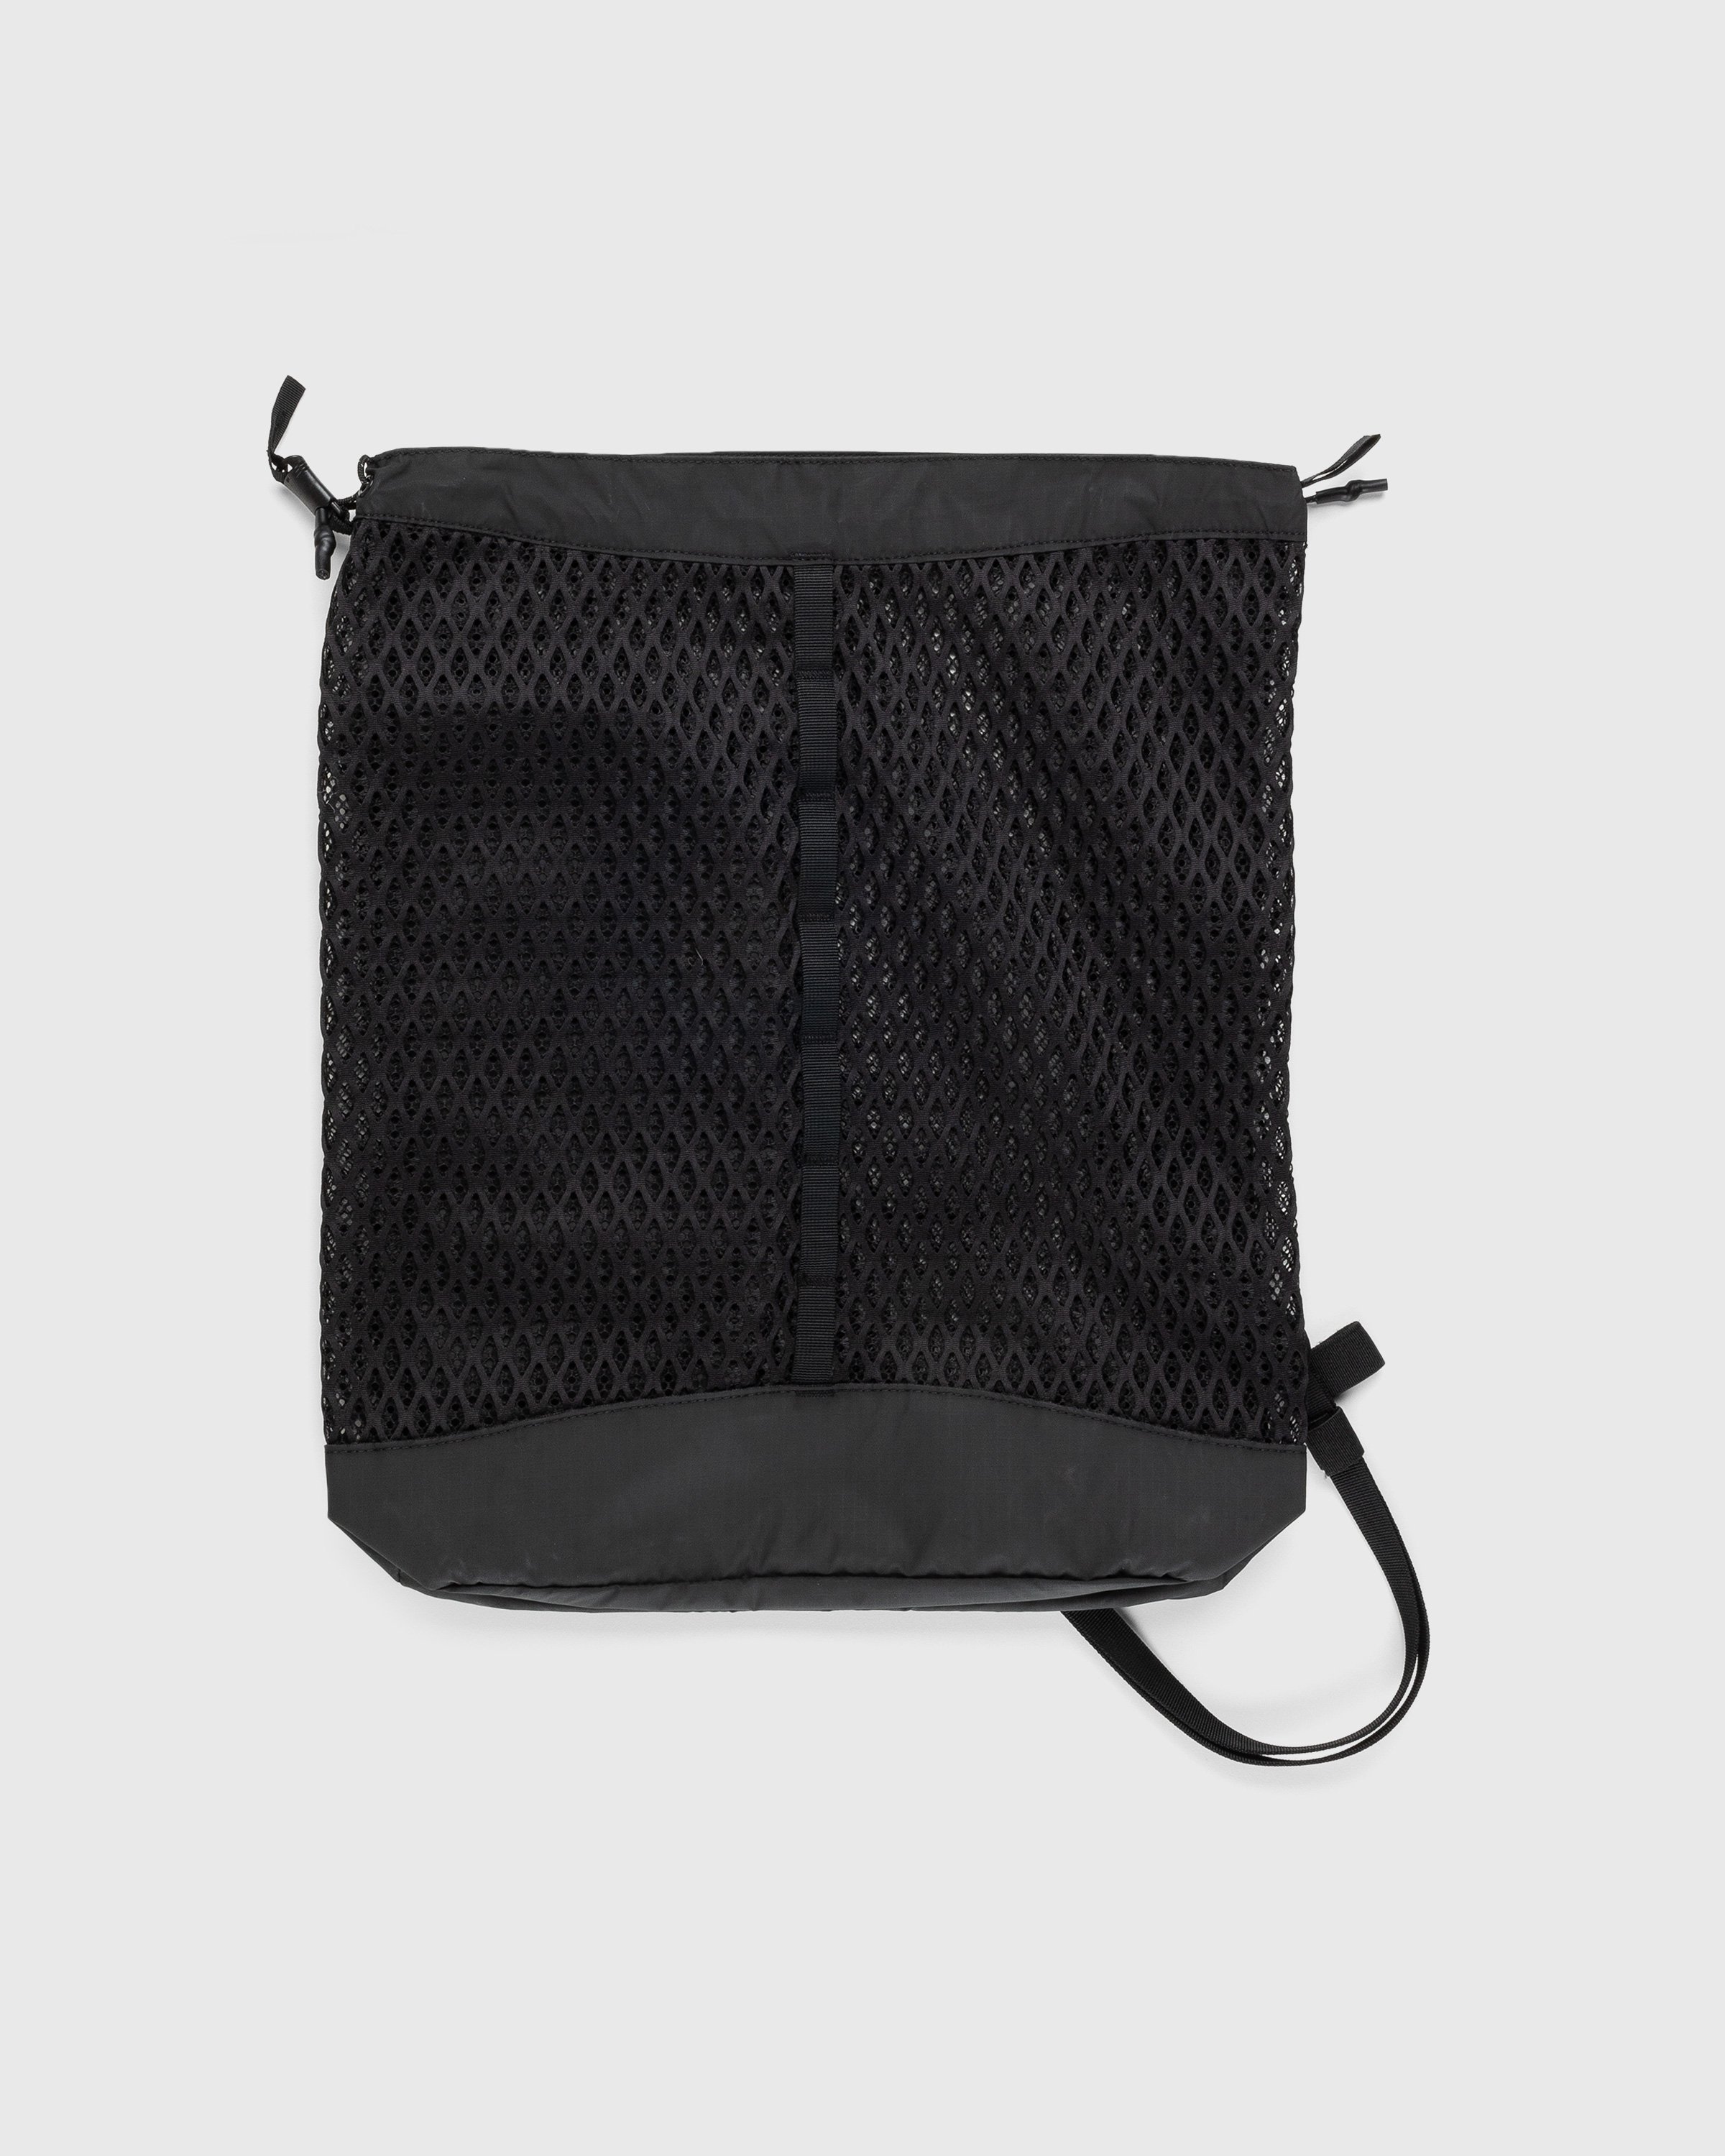 Snow Peak - Double Face Mesh Shoulder Bag Black - Accessories - Black - Image 2